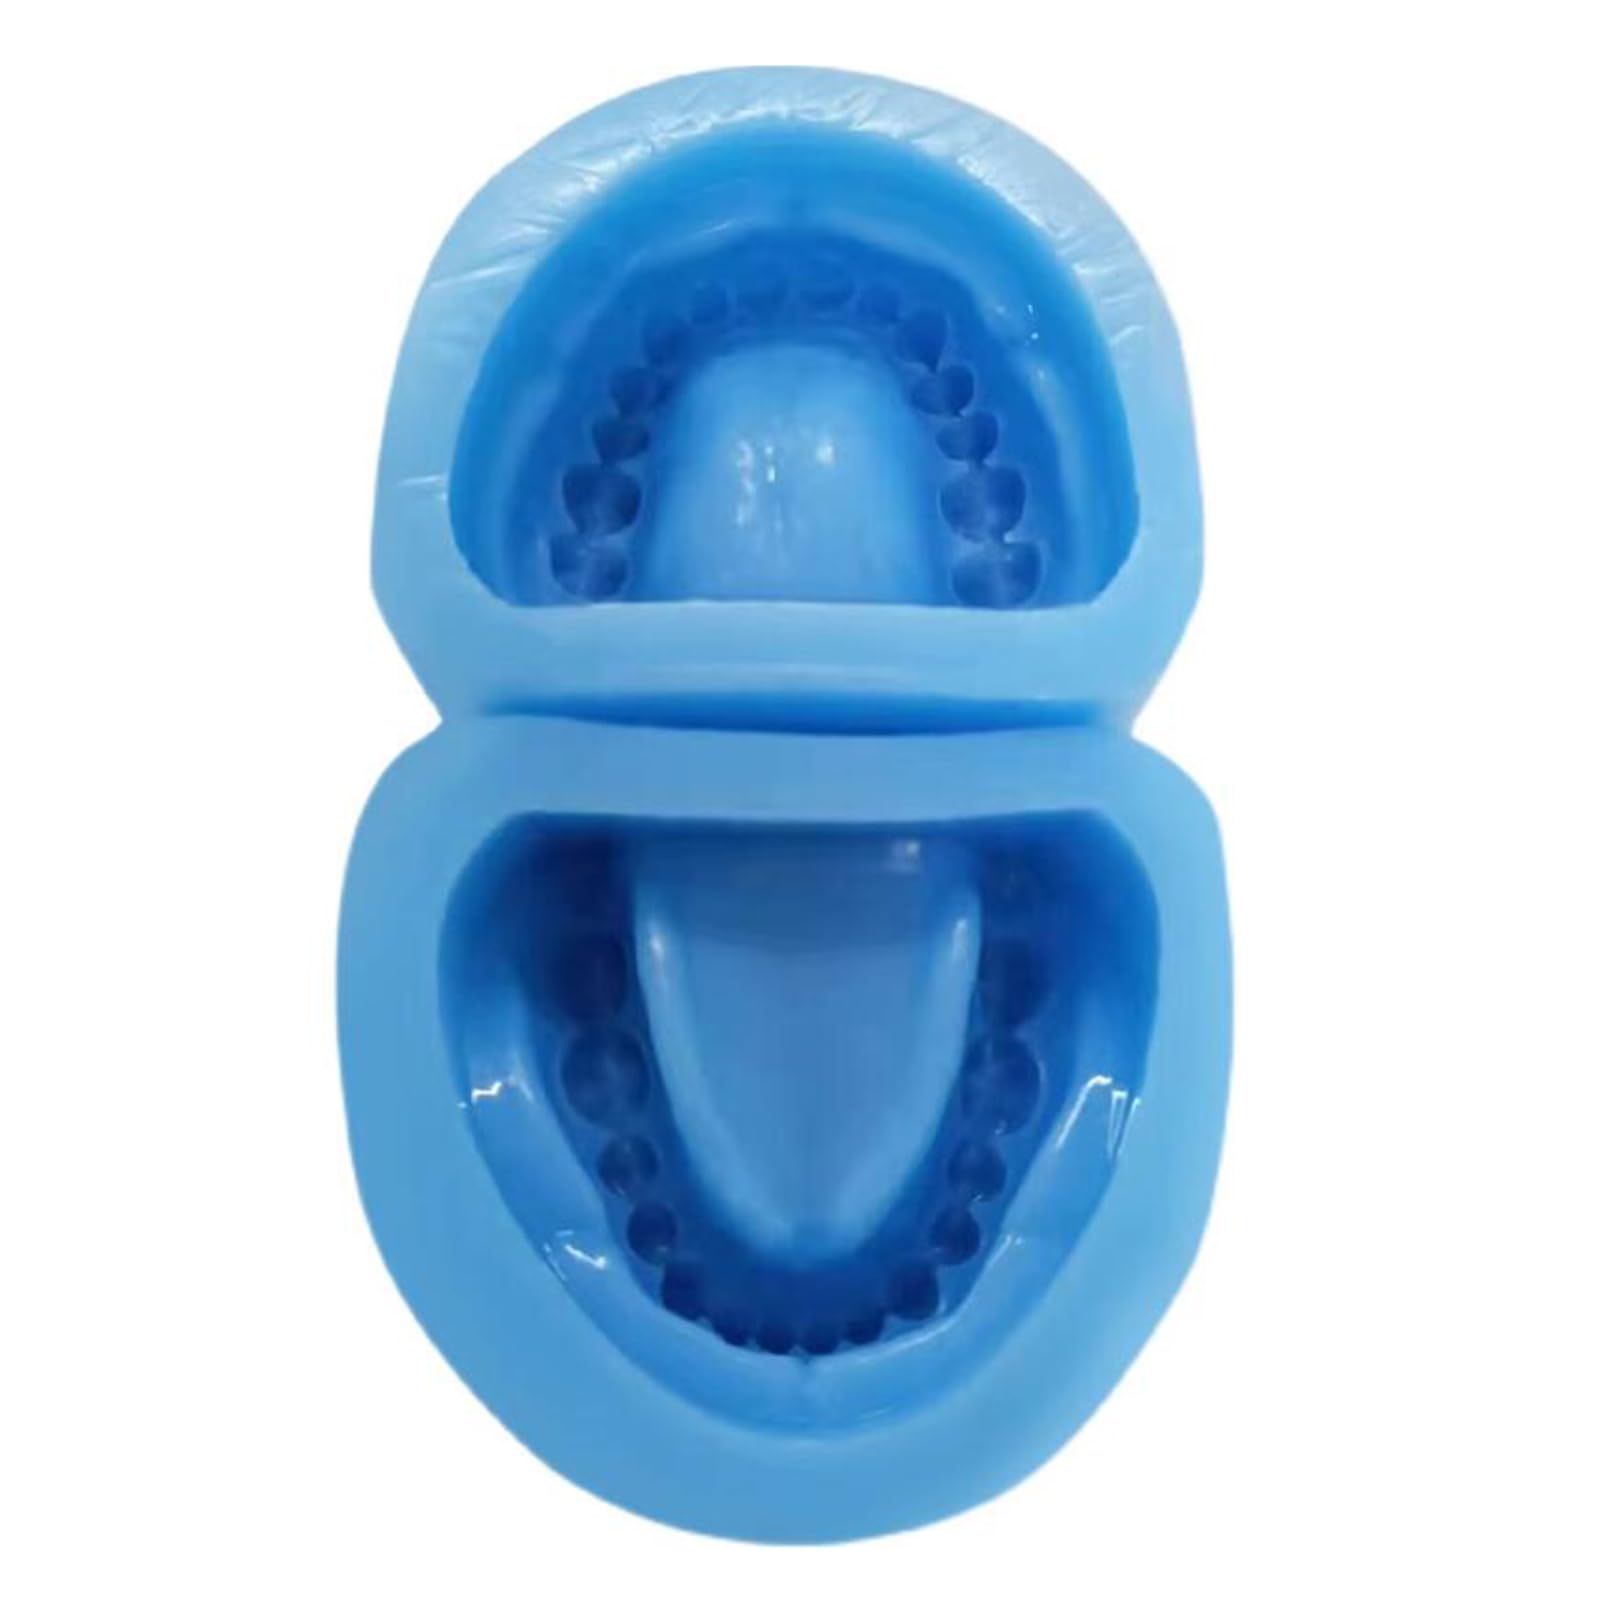 Dental Base Former Kit – Weiche Silikon Blau Prothesenform – Vollmund-Standard-Zahnersatz Silikon Ober- und Unterkiefer Universal Erwachsene Zahnmodell (volle Zähne)